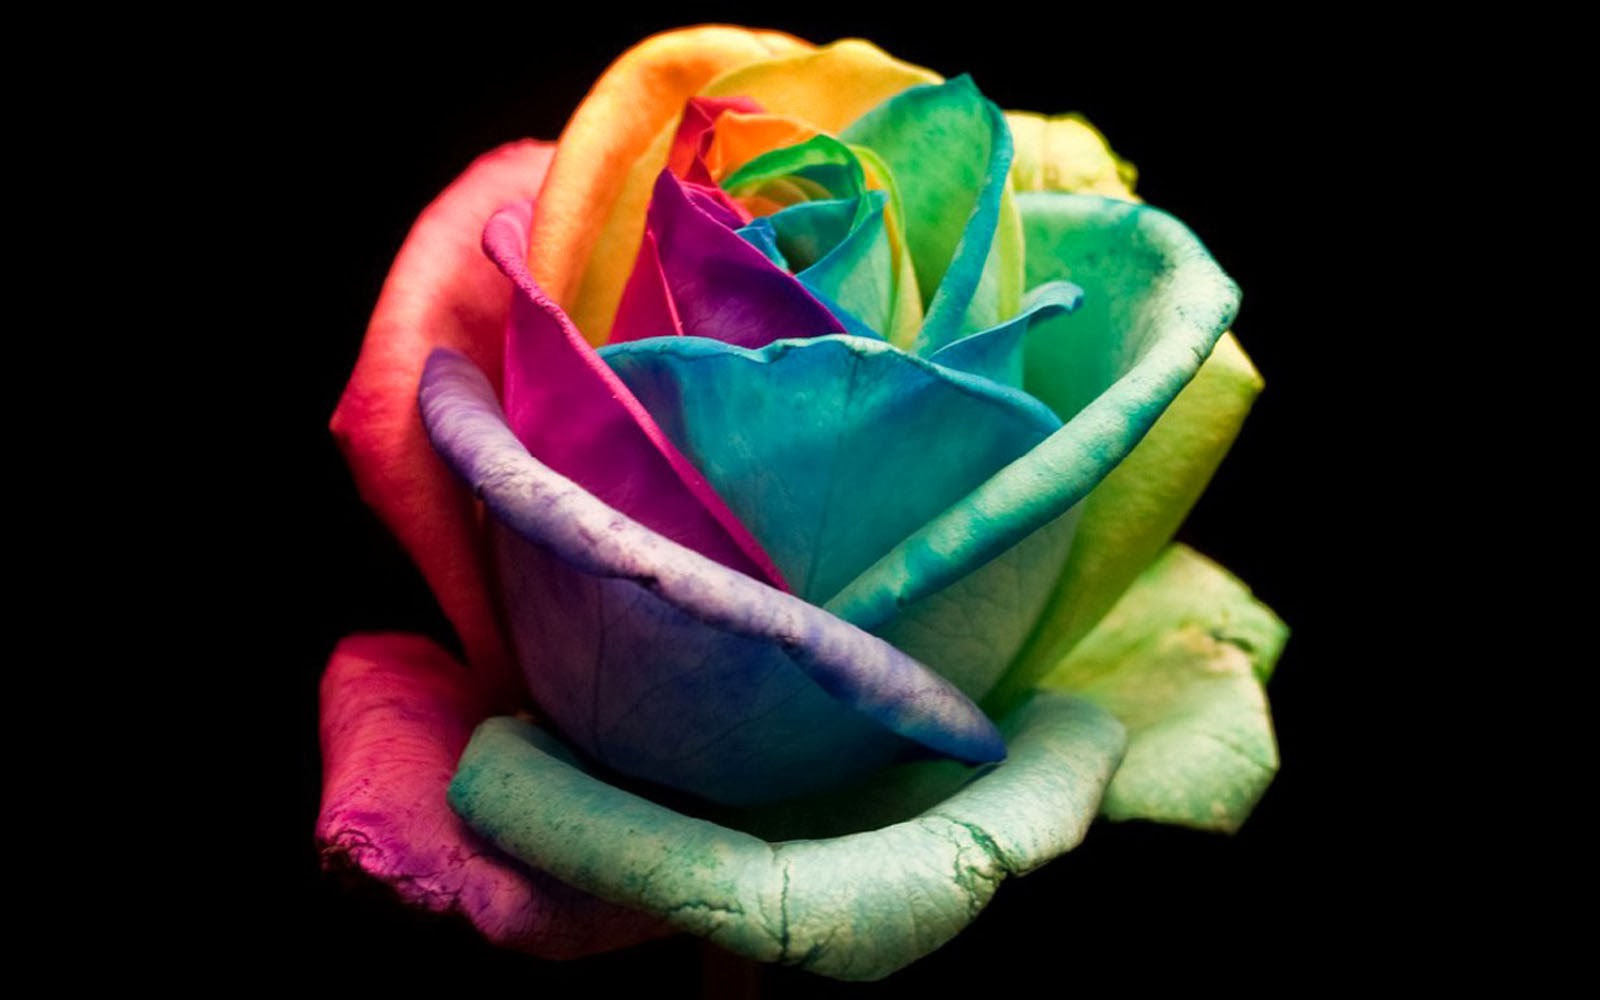 colourful roses wallpaper,rose,rainbow rose,petal,garden roses,flower